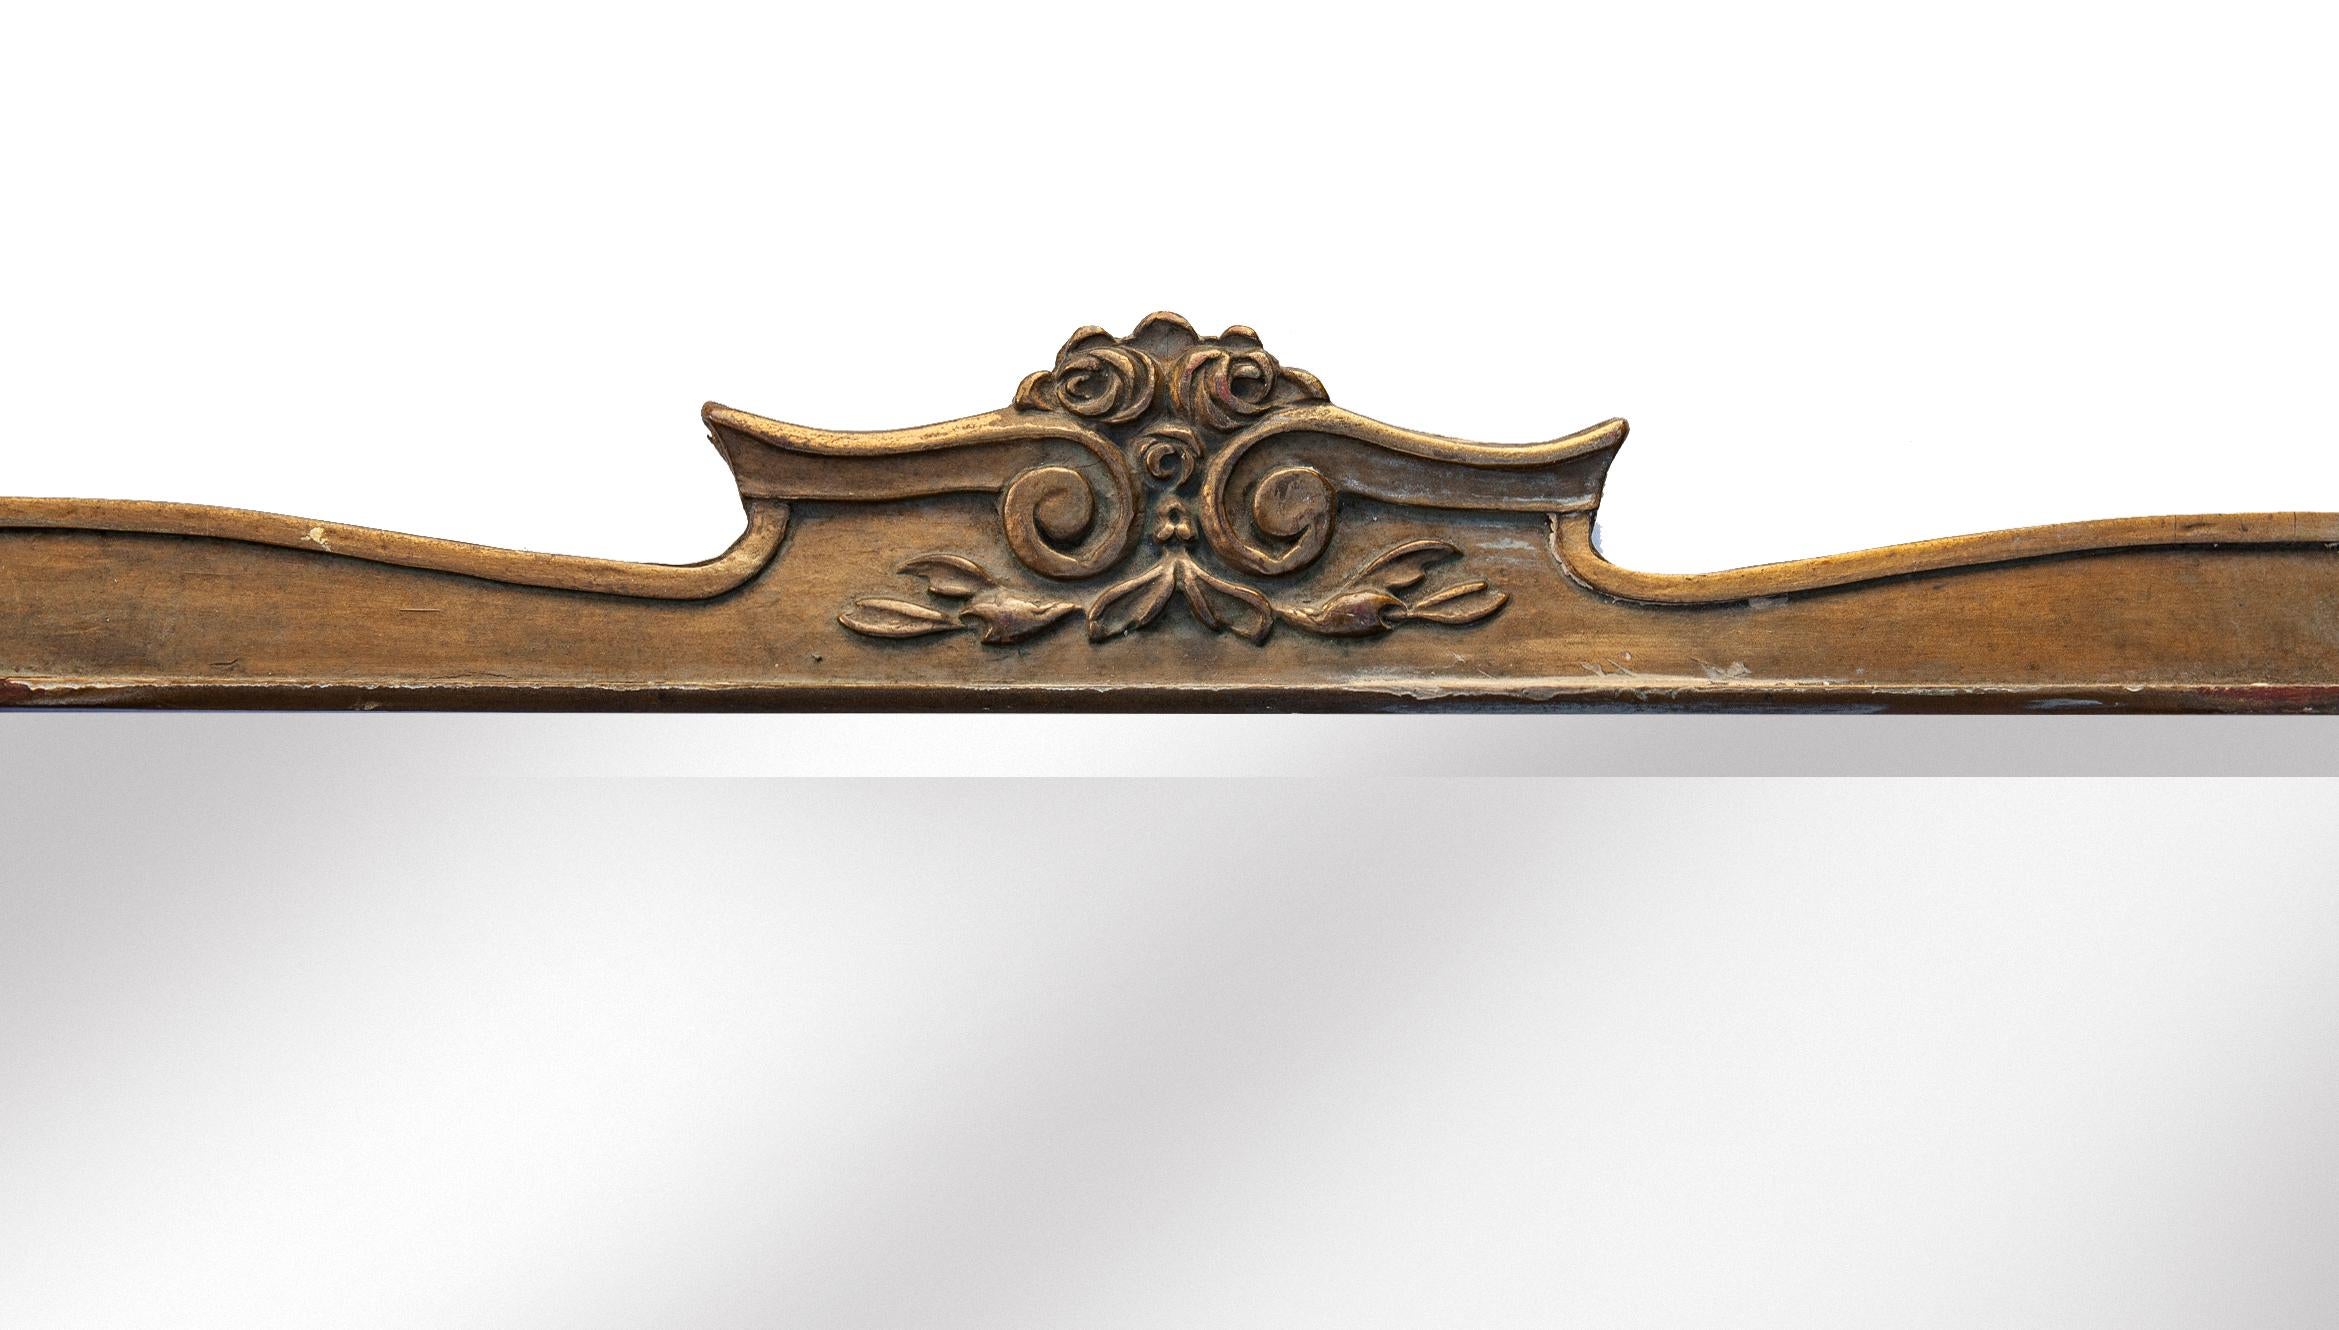 Art Noveau gold frame with gilt edge surrounding the decorative crown, trim & corners. Rare original design.